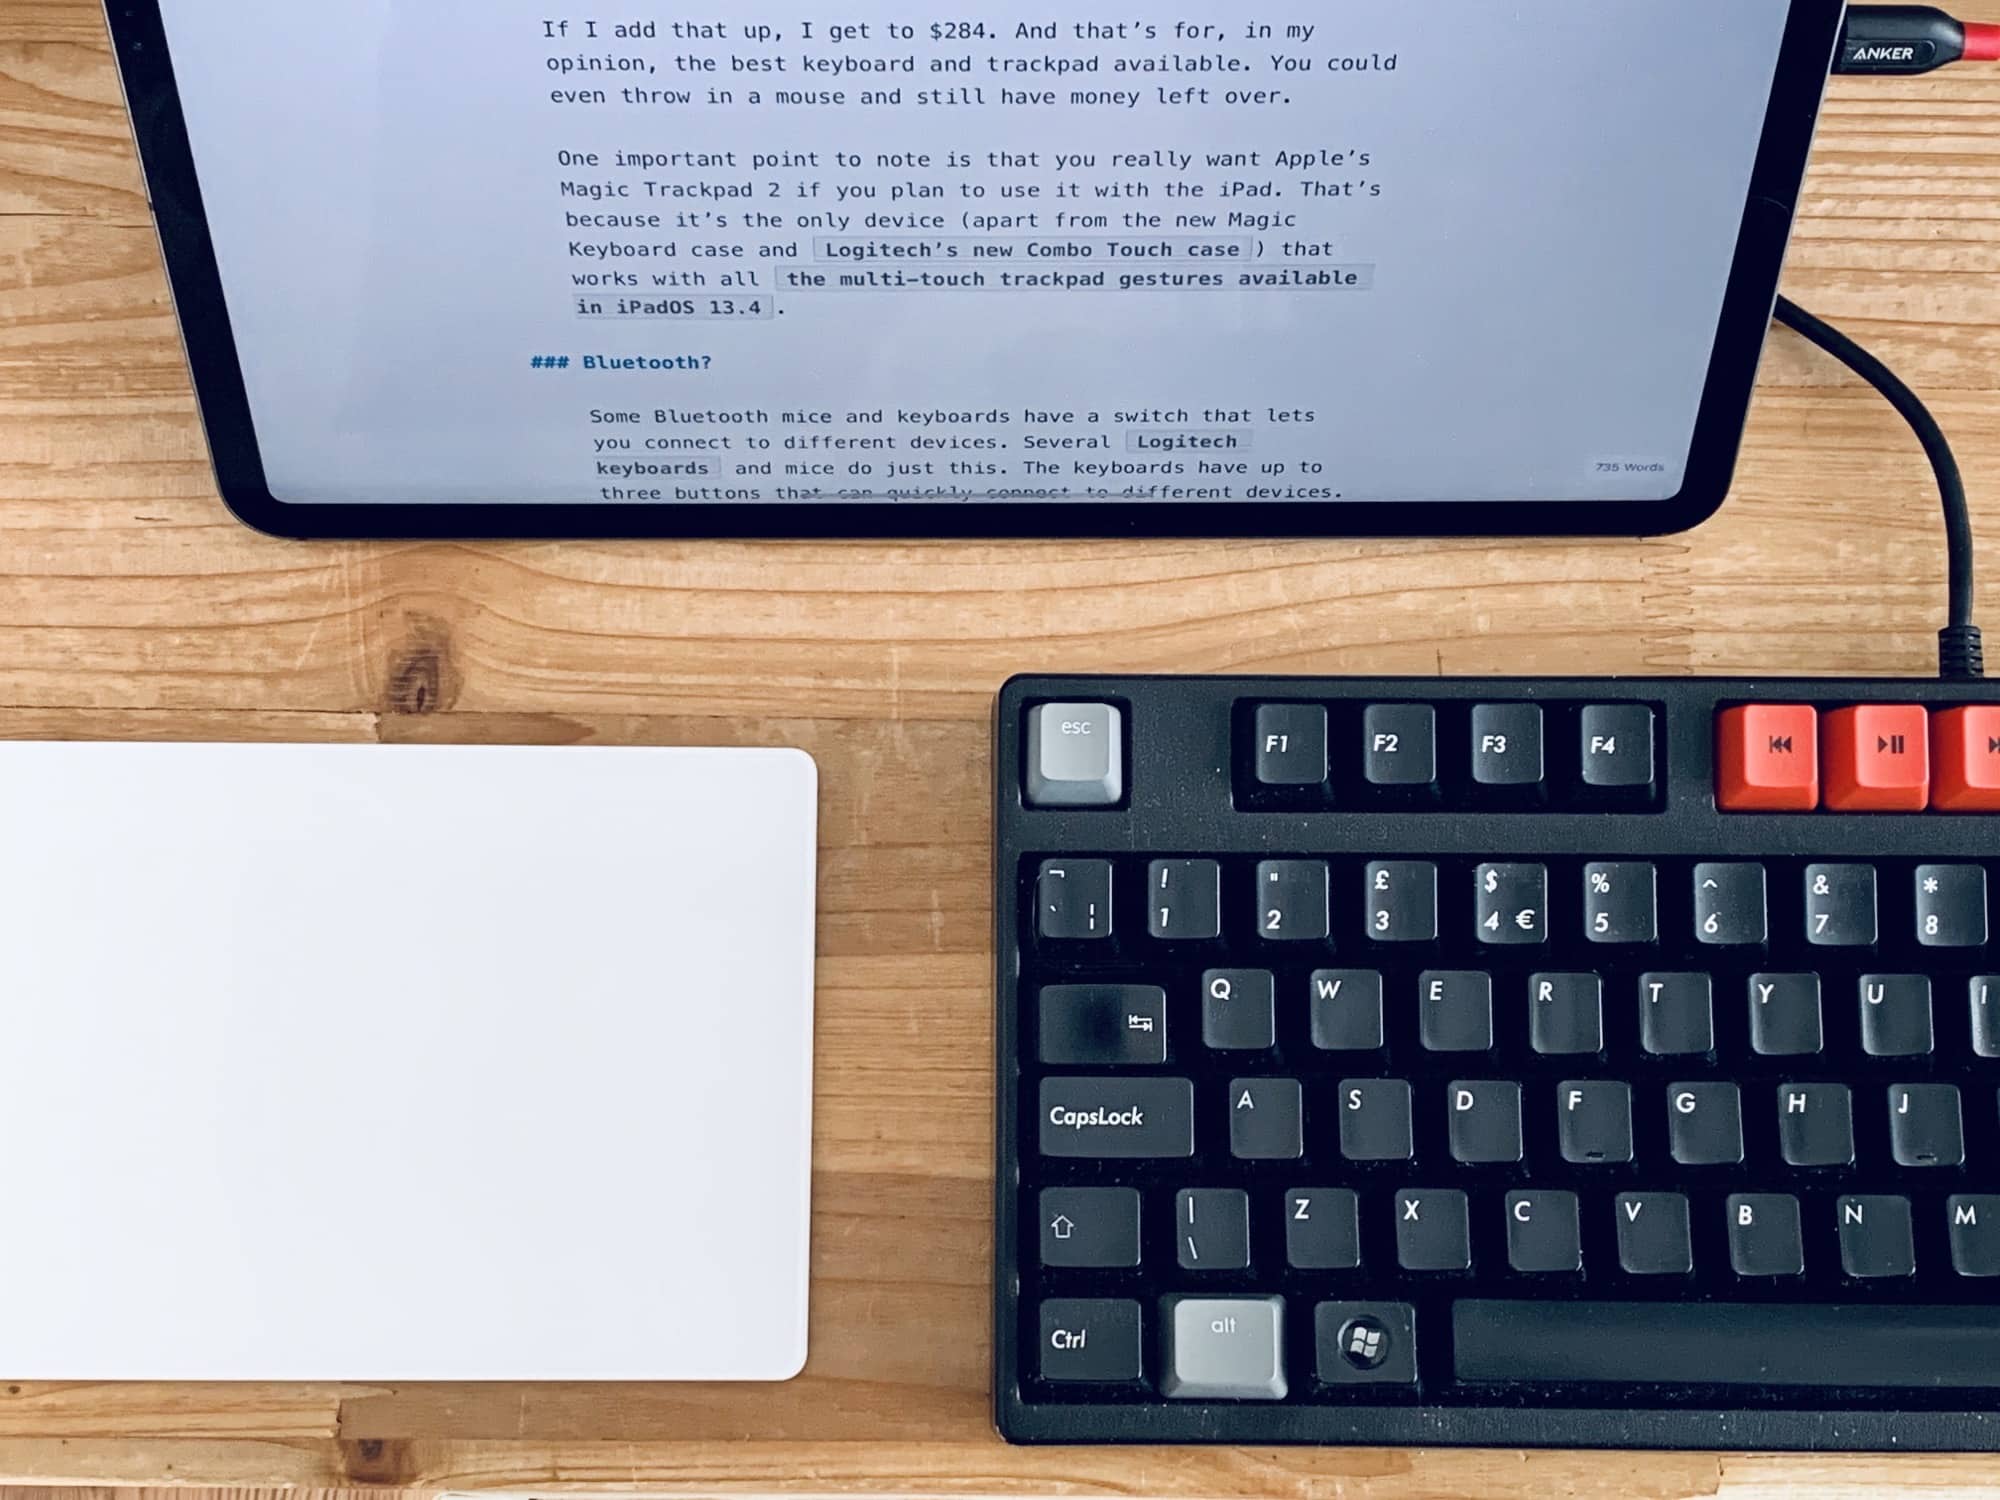 iPad, share keyboard, and trackpad